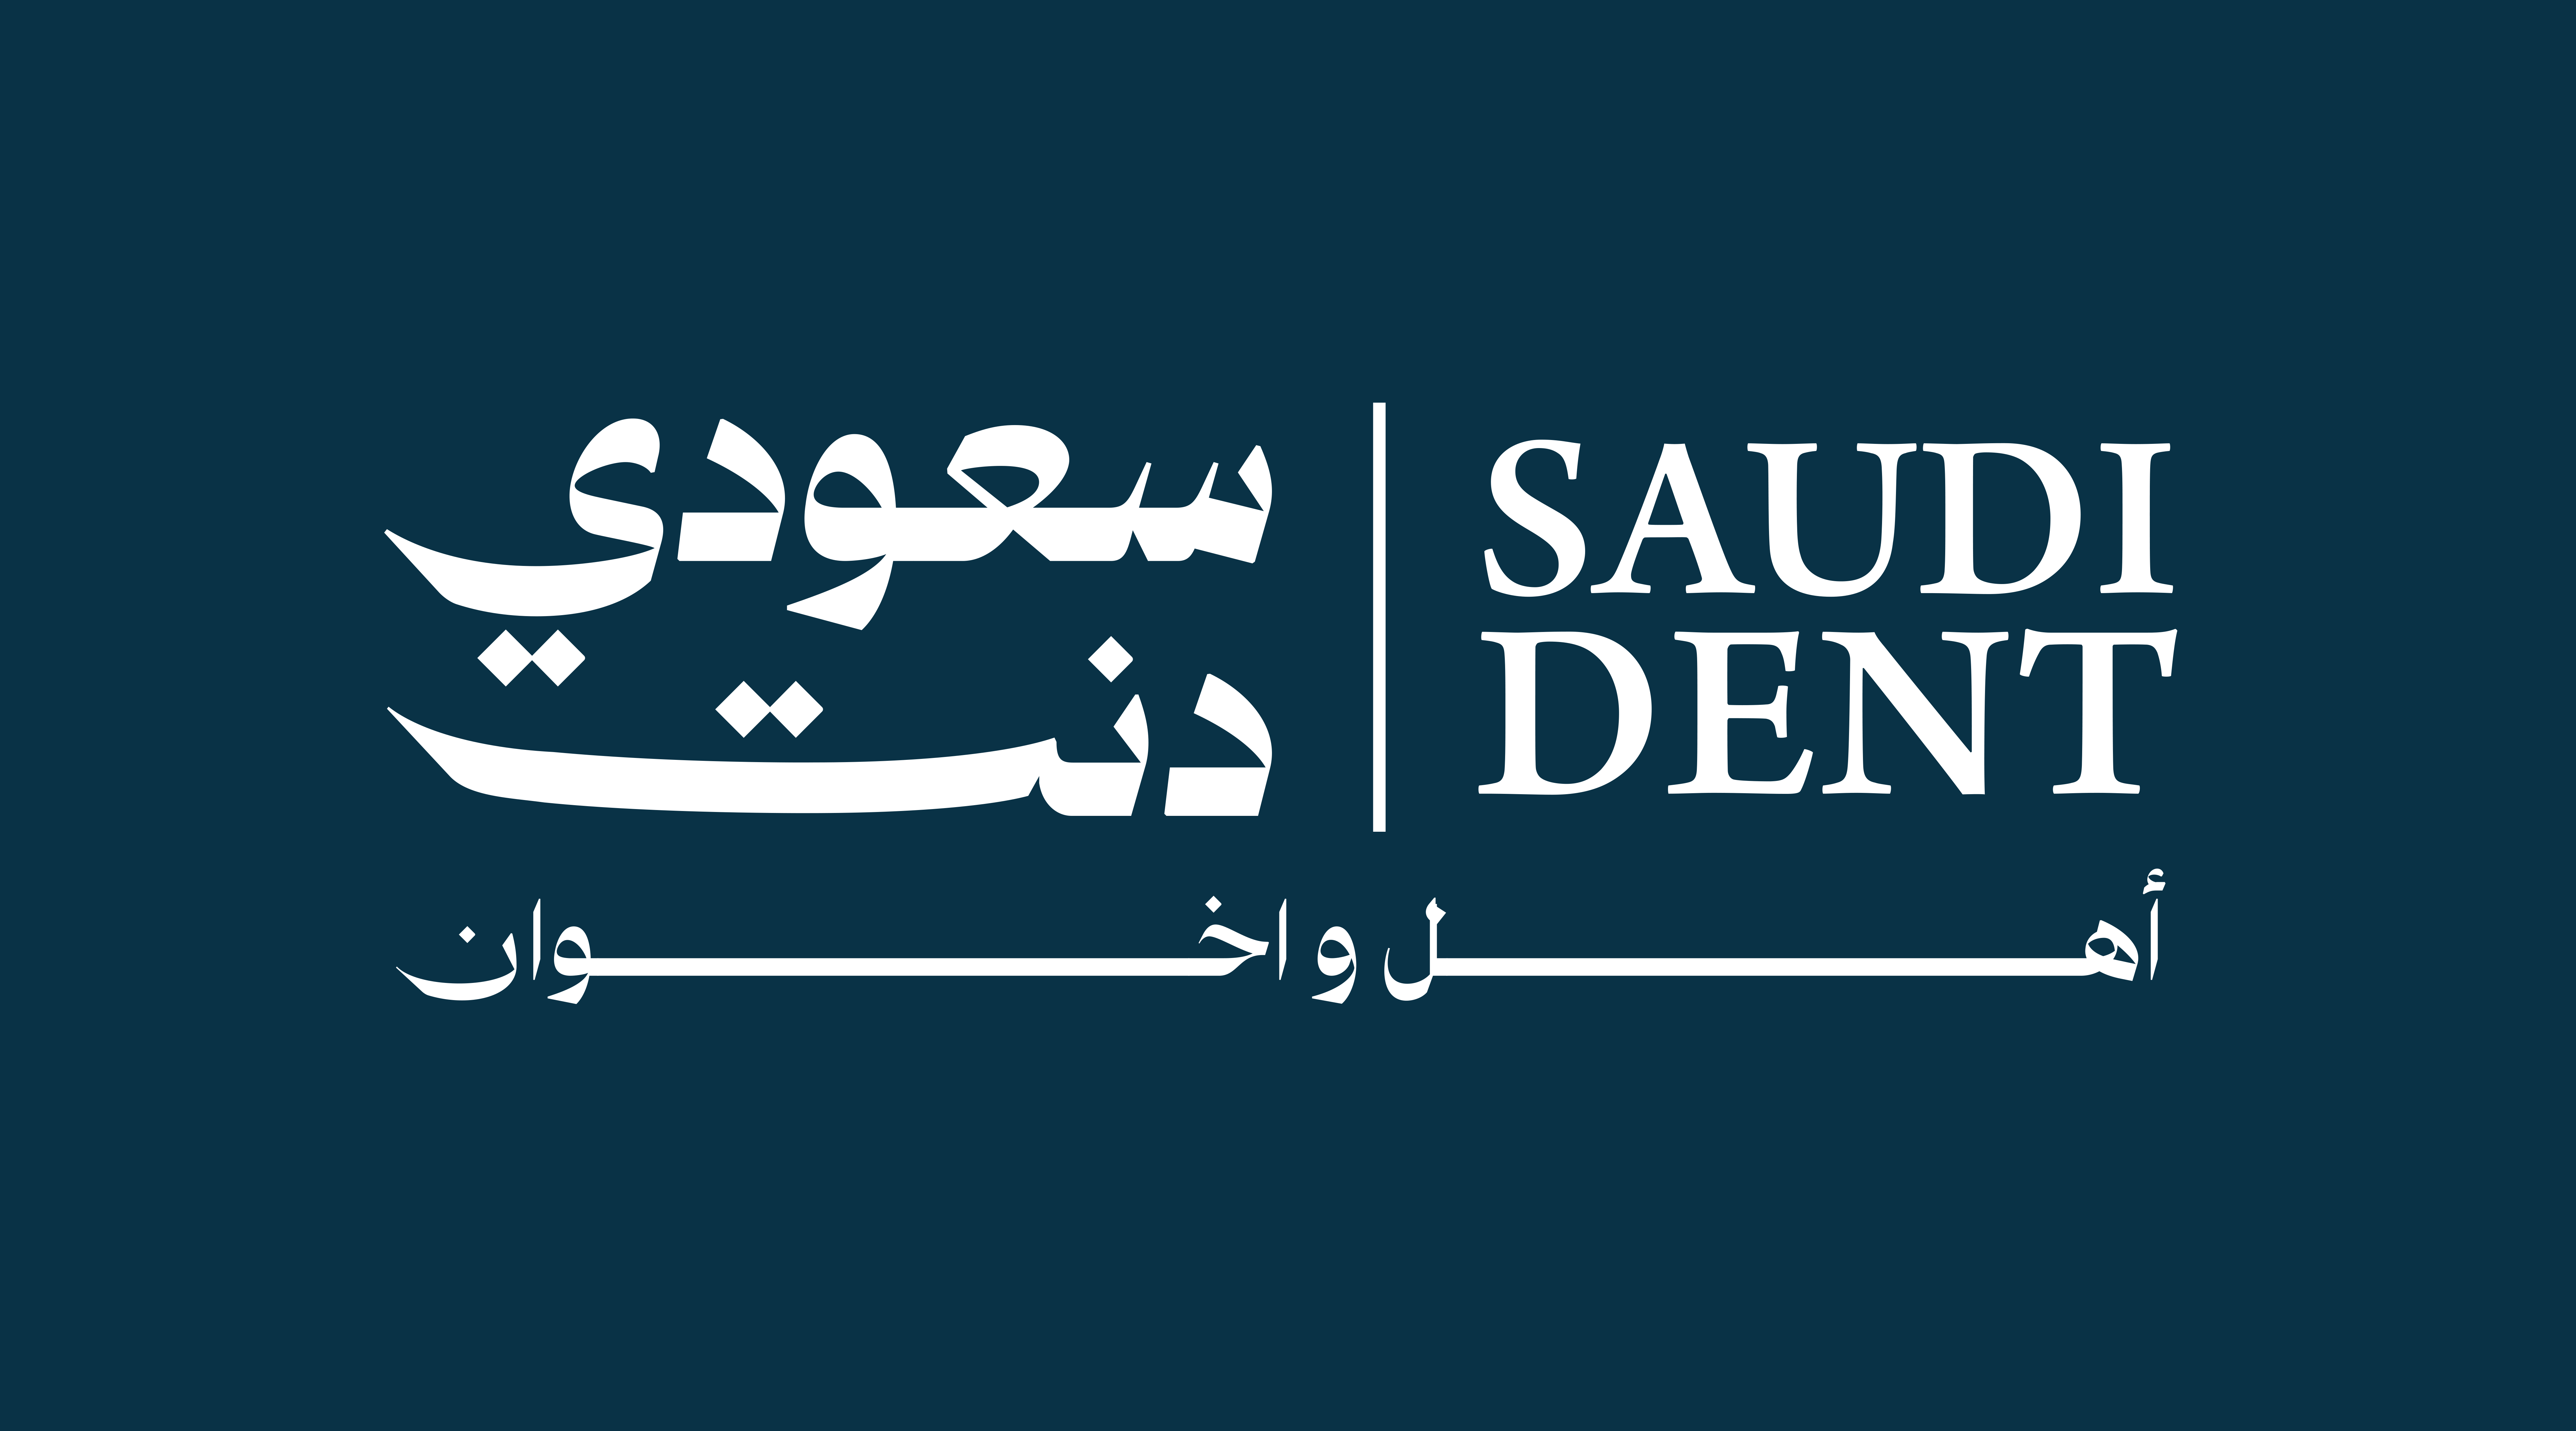 Saudi Dent الصفحة الرئيسية سعودي دنت سعودي دنت,طب اسنان,سعودي دنت لطب الاسنان,اسنان